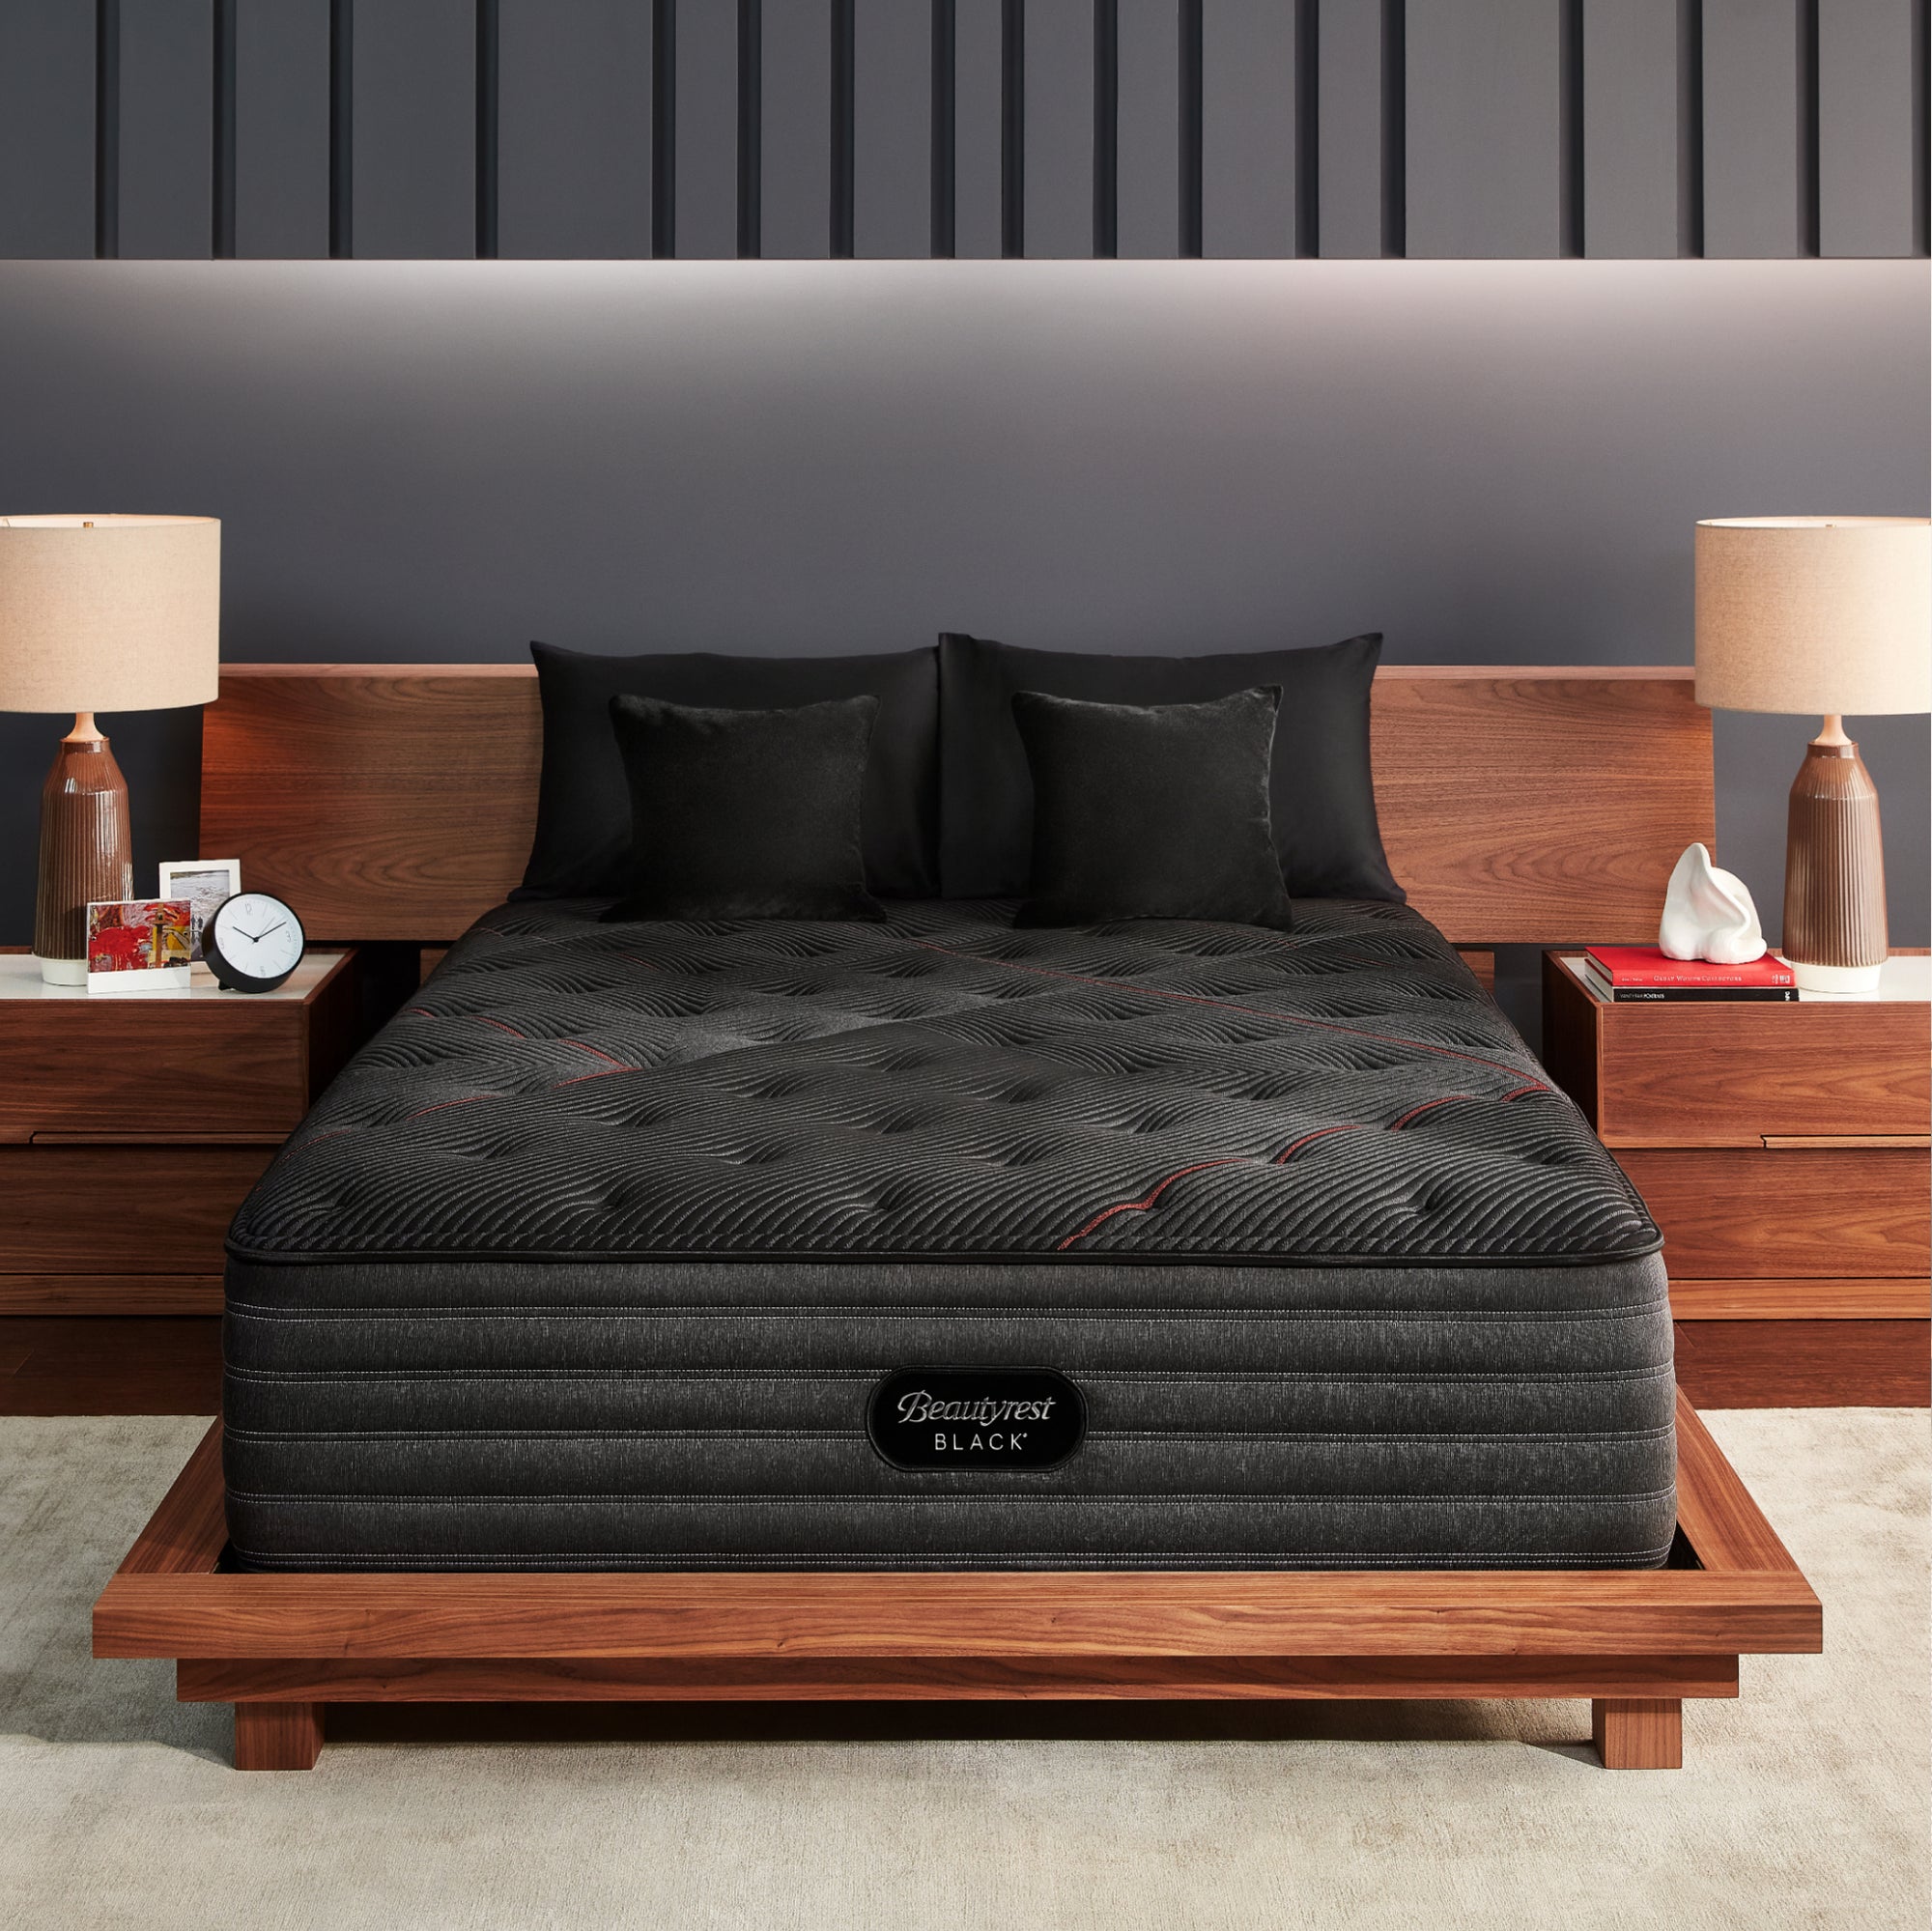 The Beautyrest Black mattress in a bedroom ||series: deluxe c-class|| feel: medium